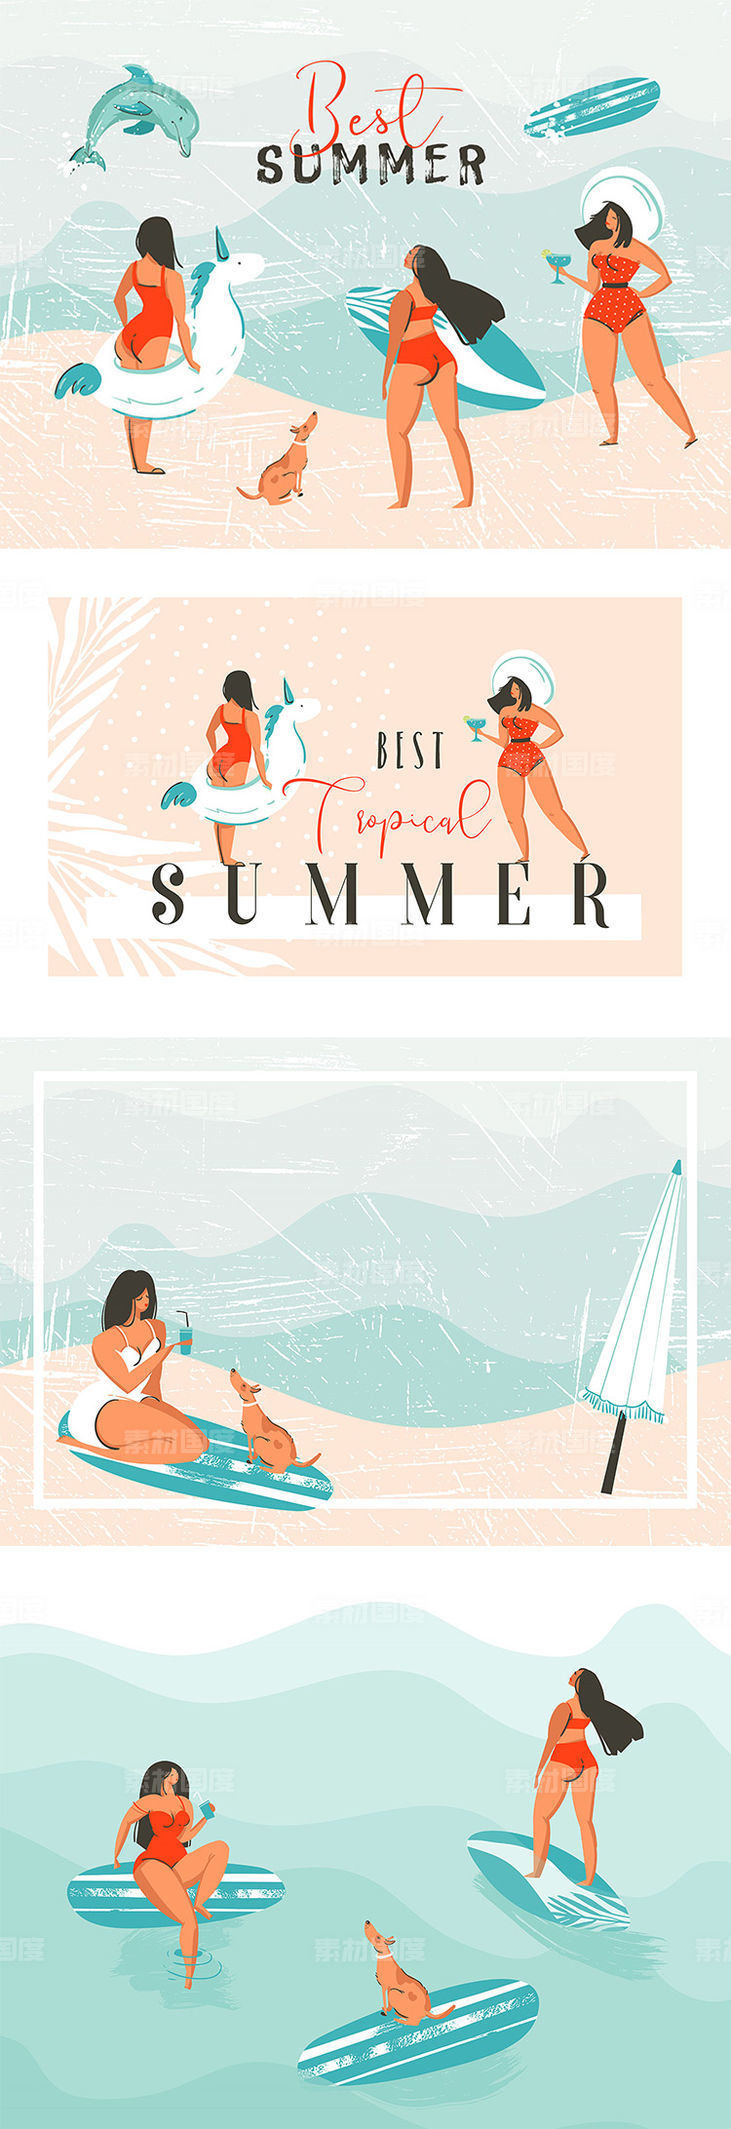 一组夏季海滩主题插画 .png .eps素材下载